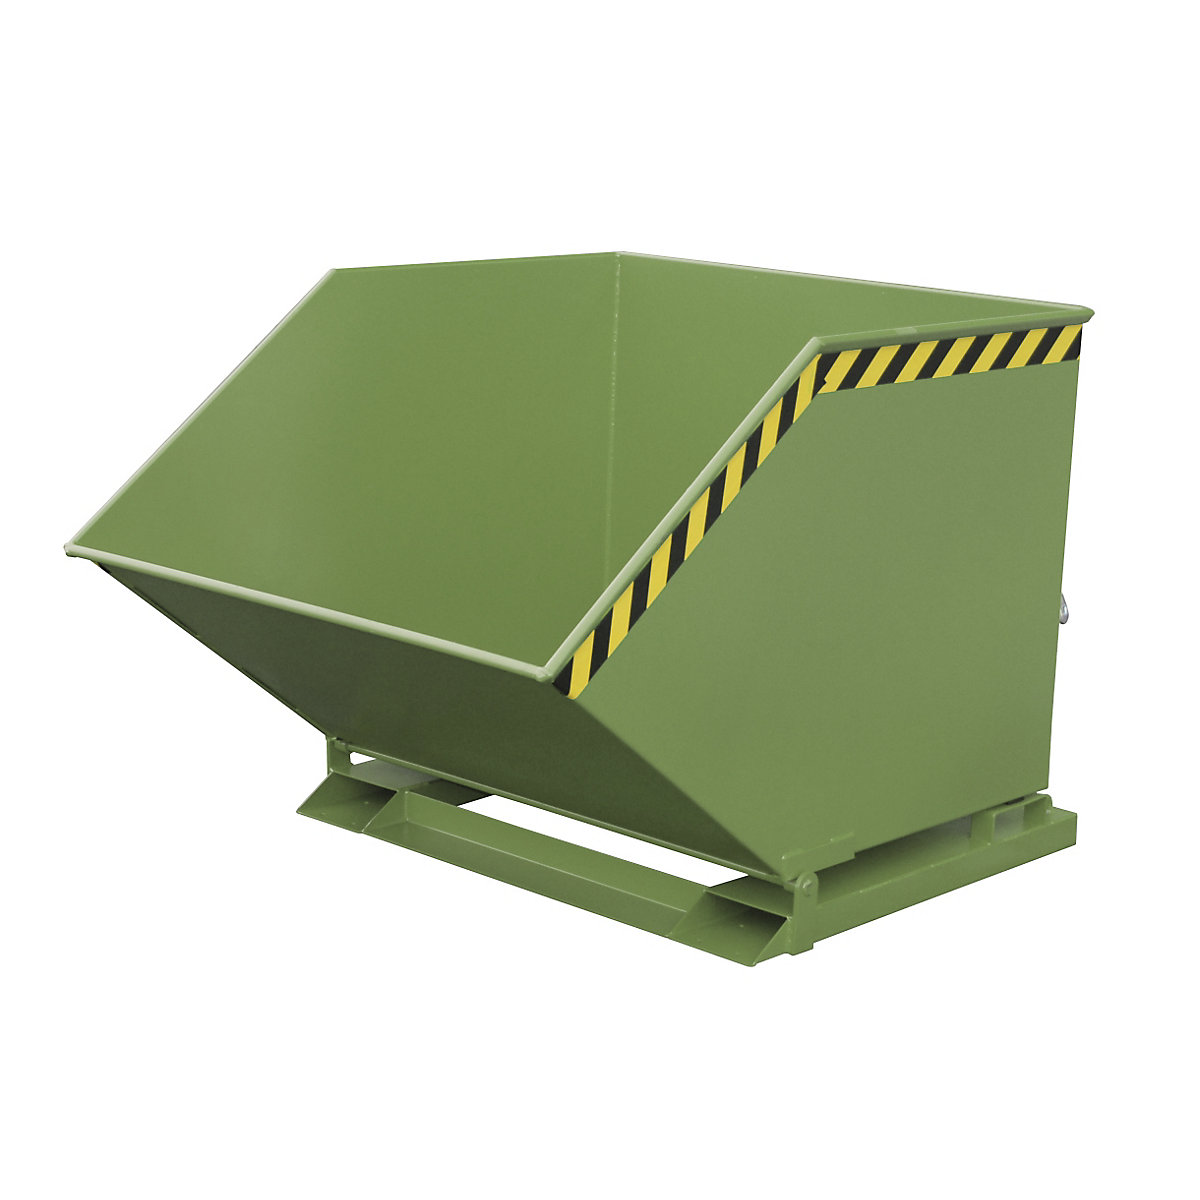 Cavidade de basculação com mecanismo basculante – eurokraft pro, forma de caixa, volume 1 m³, verde RAL 6011-7